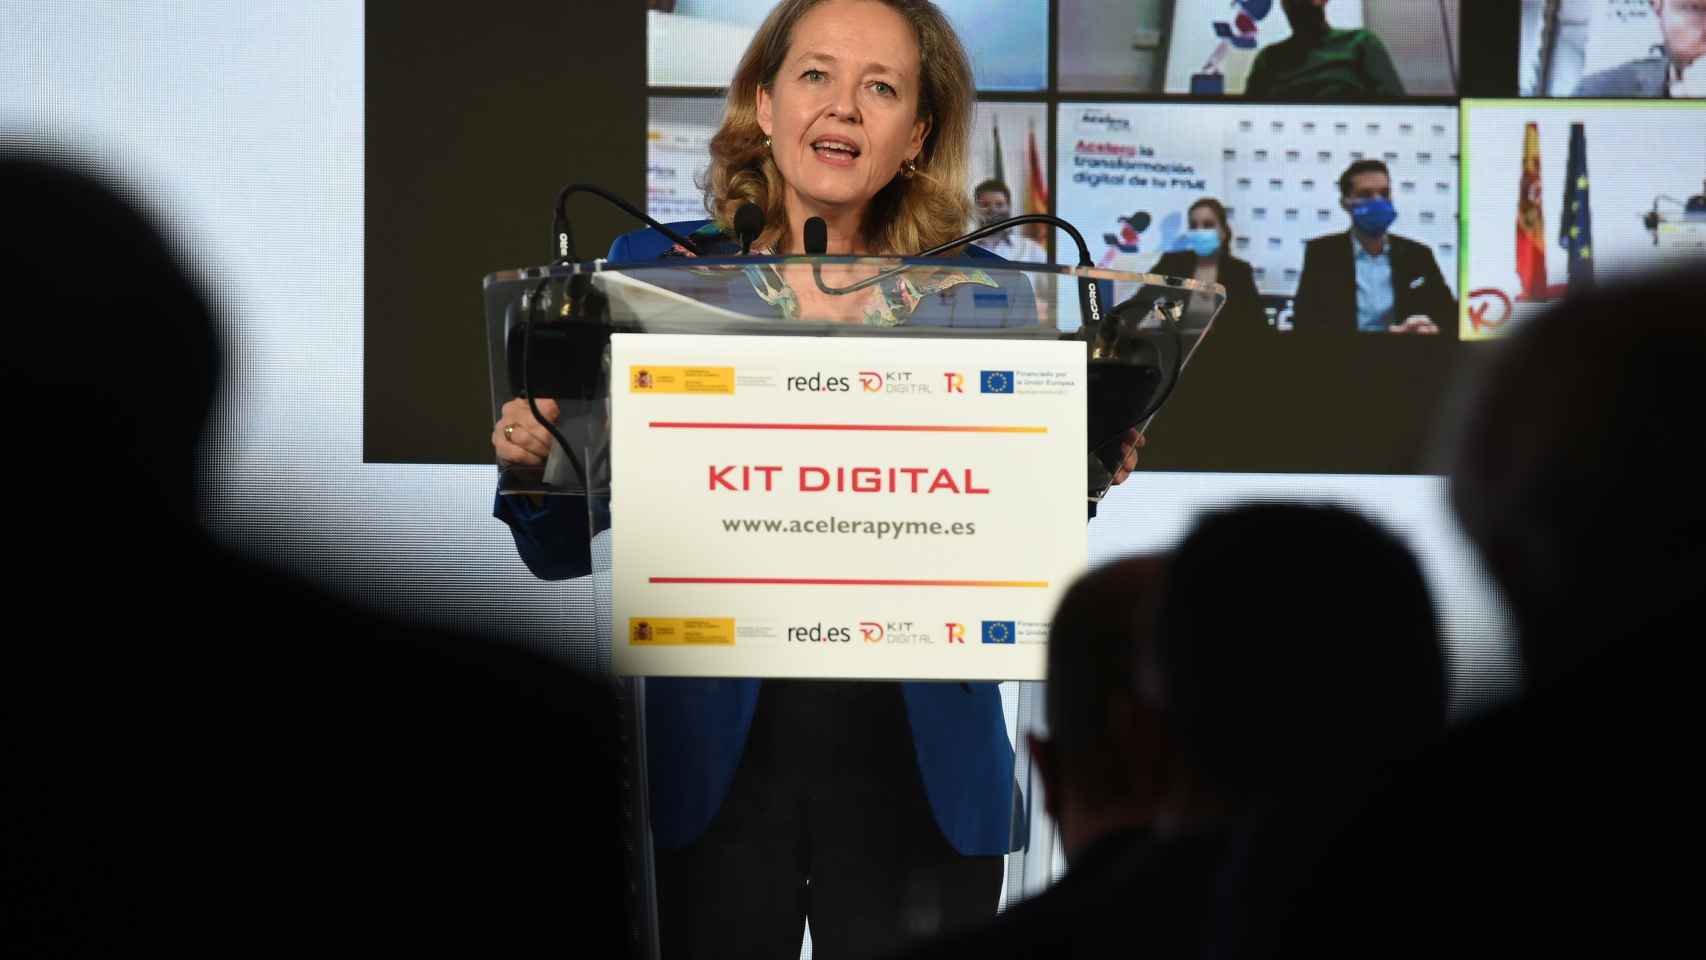 La vicepresidenta primera y ministra de Asuntos Económicos, Nadia Calviño, interviene en la presentación del Kit Digital en Ifema.